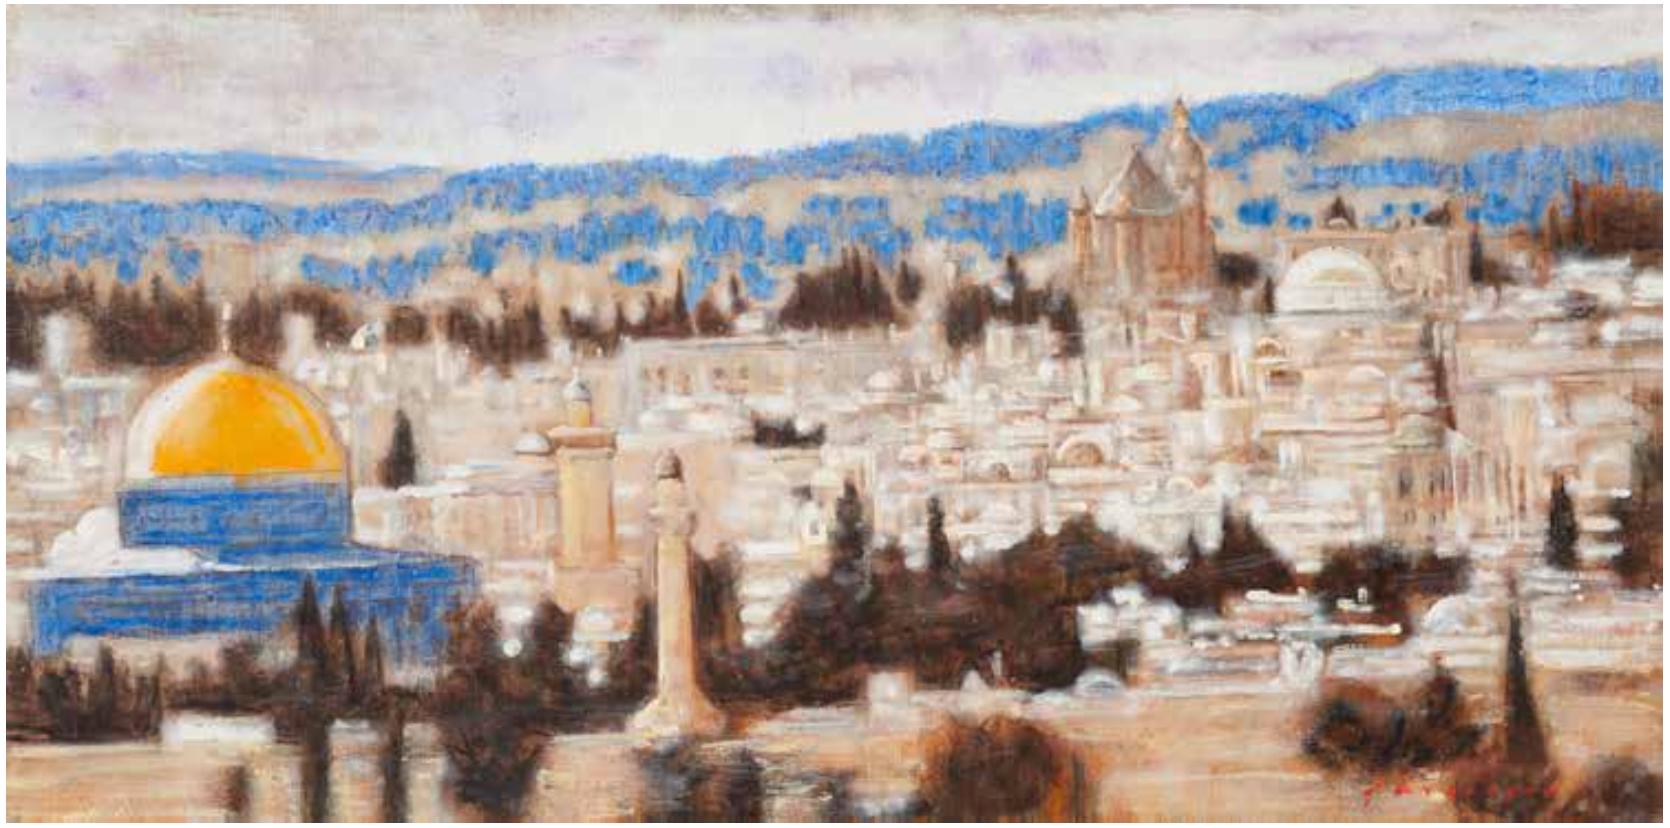 Einzigartiges Ölgemälde auf Sackleinen von Alexander Evgrafov
Titel : Jerusalem